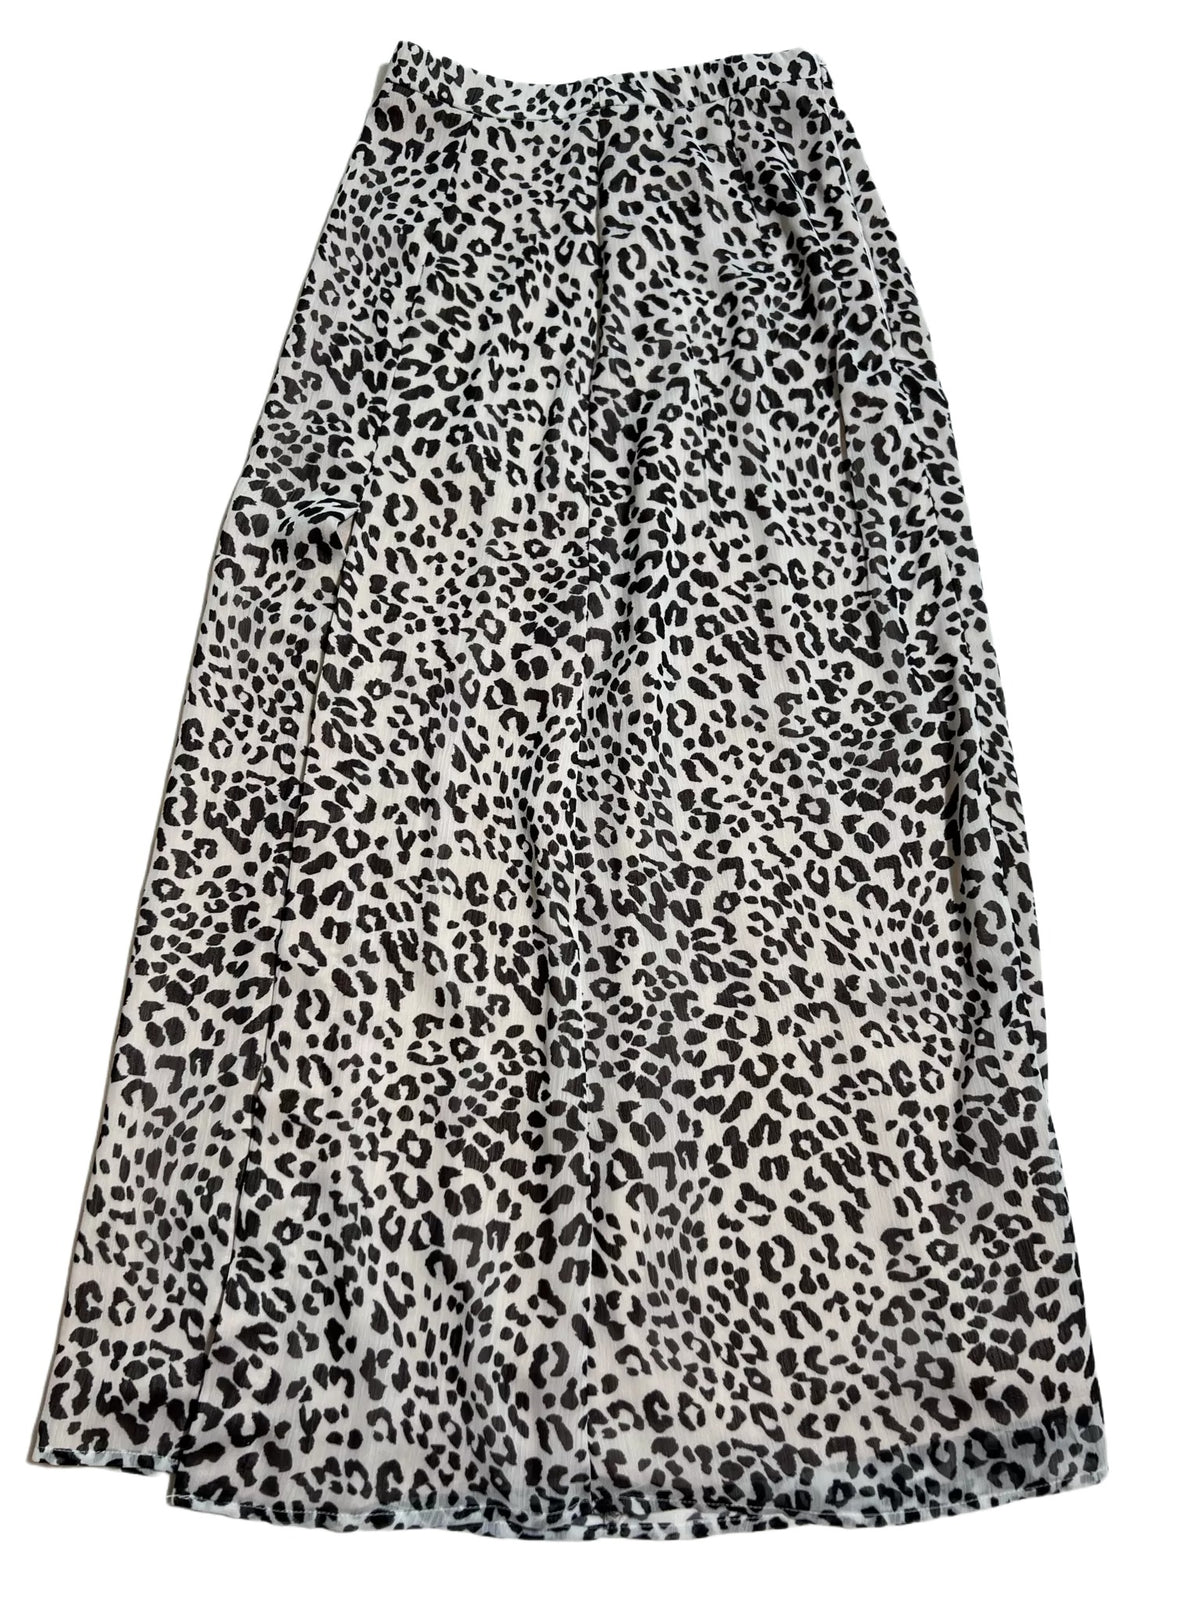 Kookat- Cheetah Print Maxi Skirt